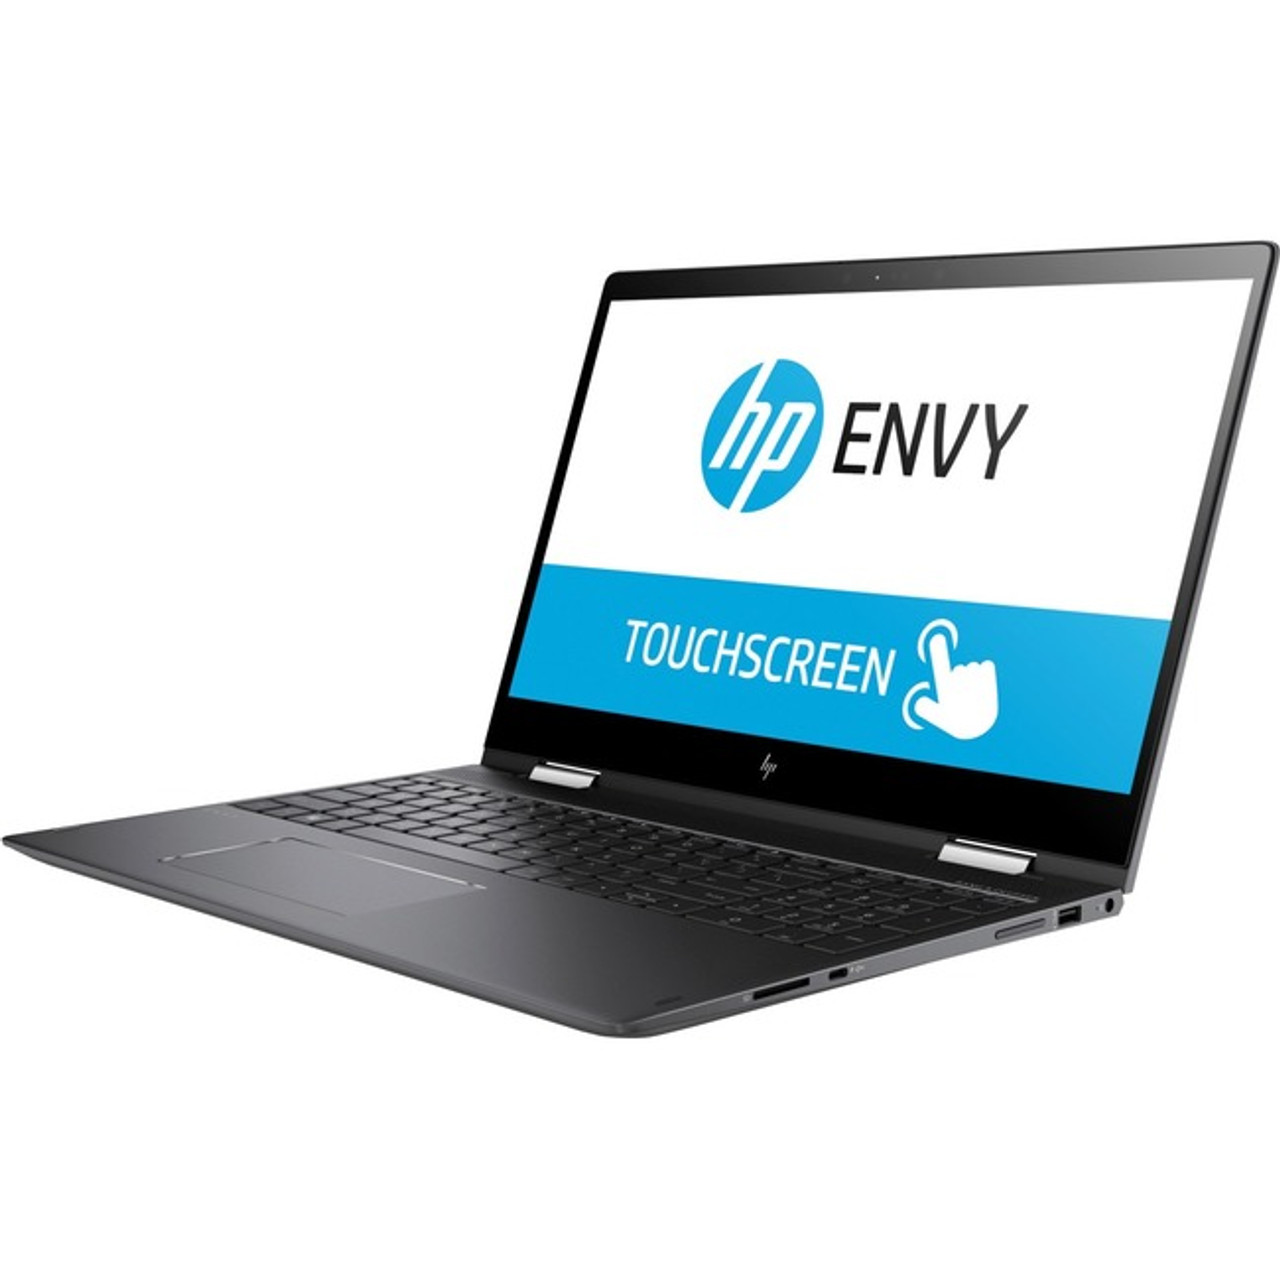 ENVY 15-bq100 x360 Convertible PC